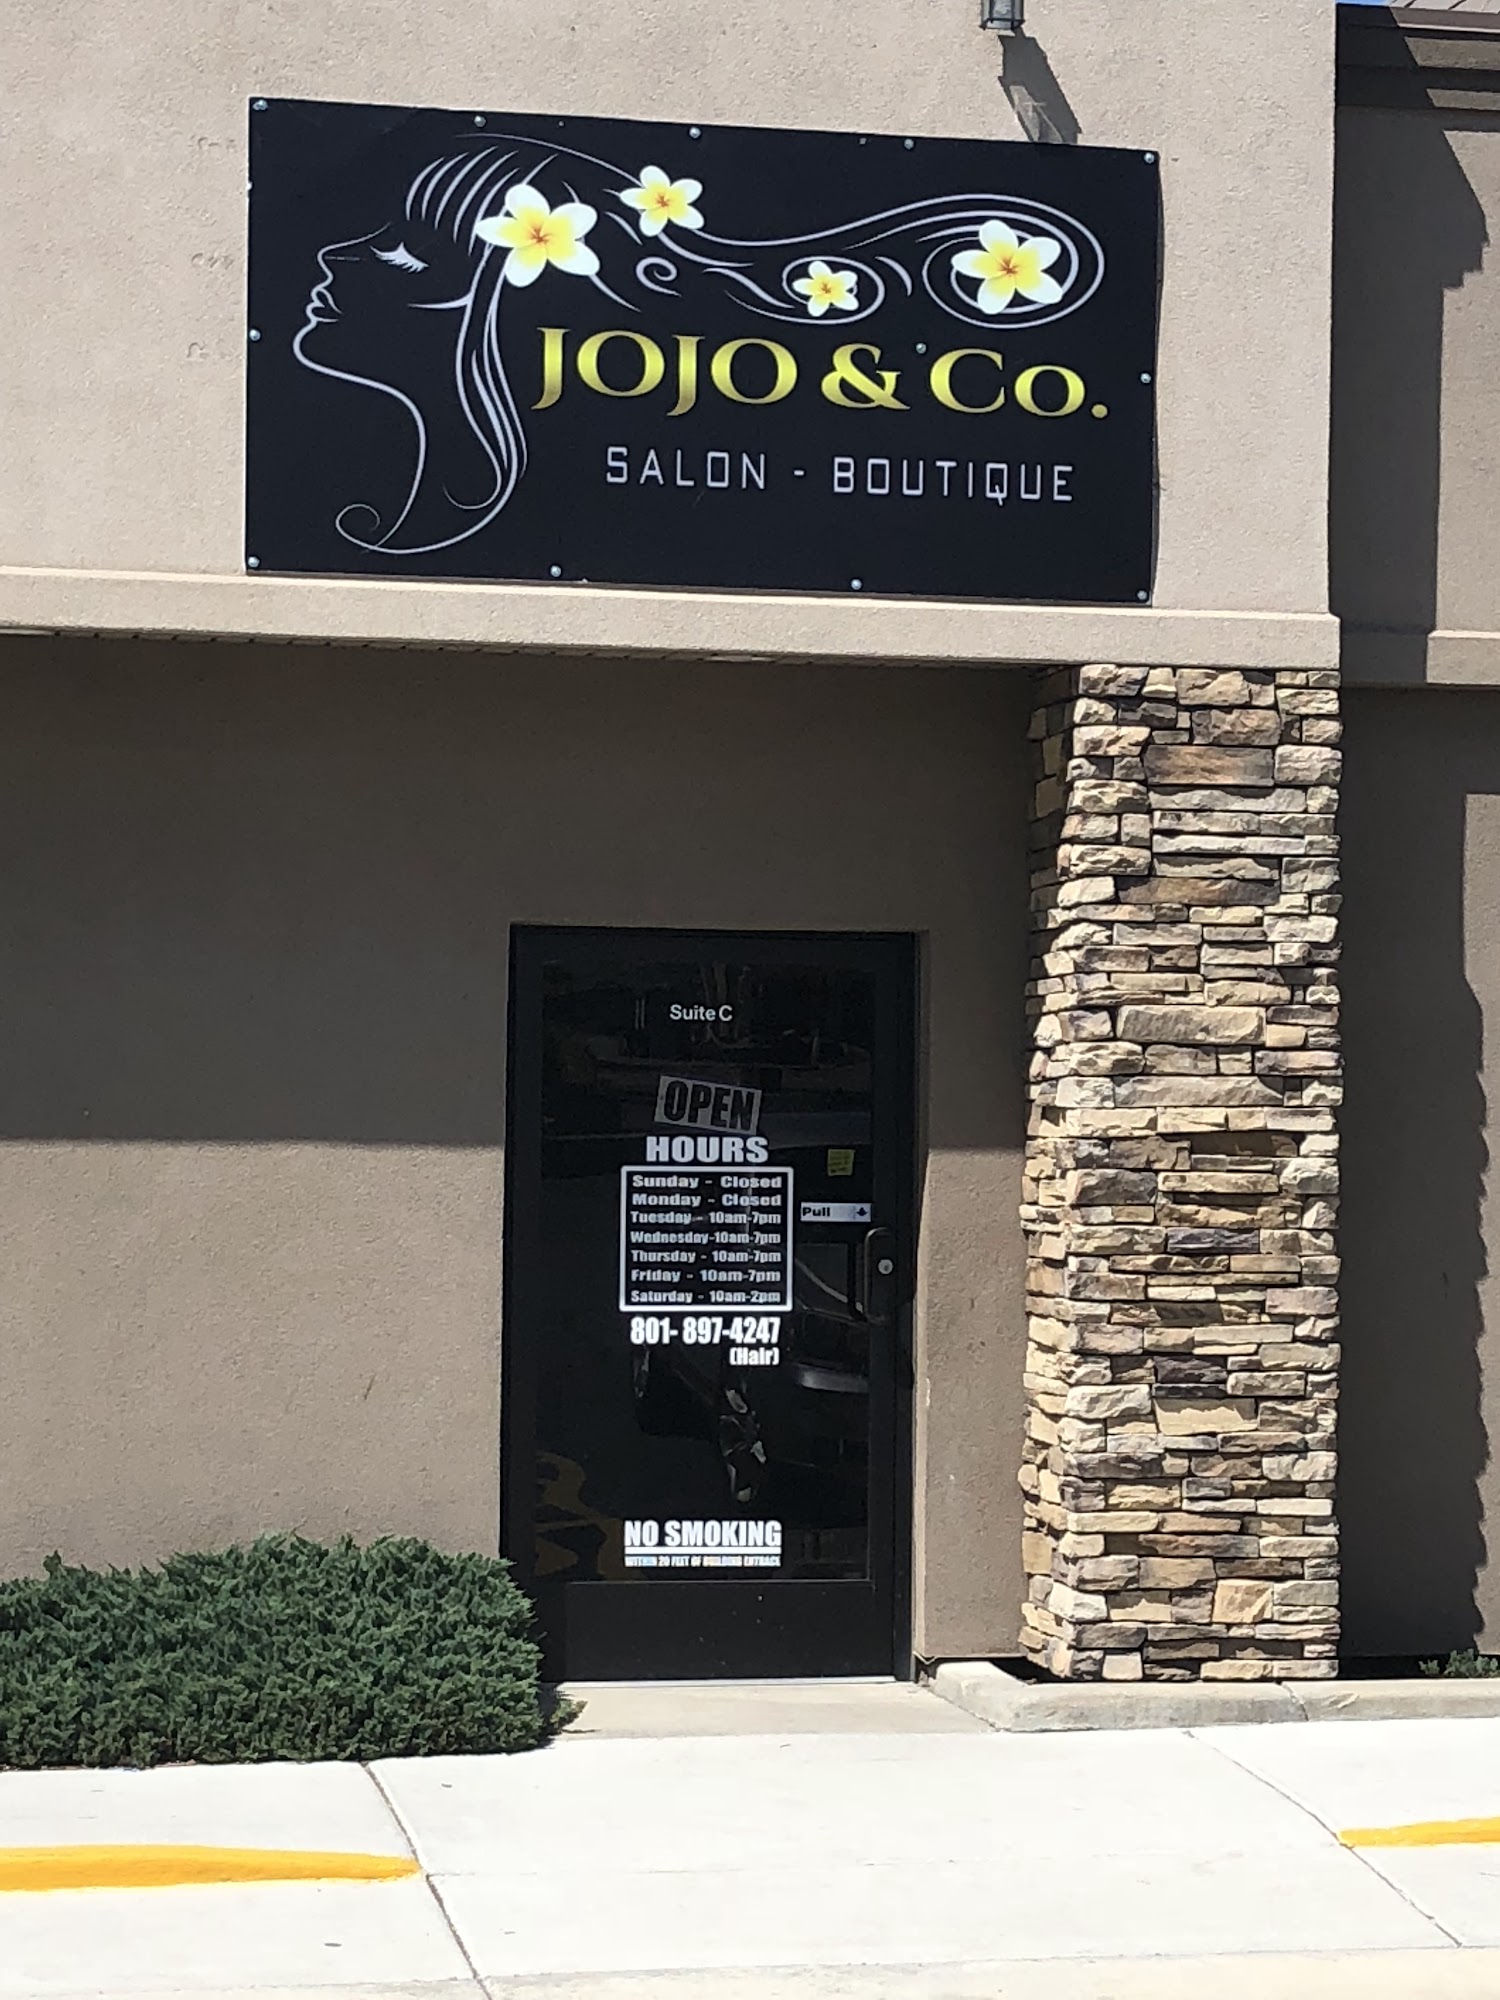 JoJo & Co. Salon 3441 S 8400 W suite c, Magna Utah 84044